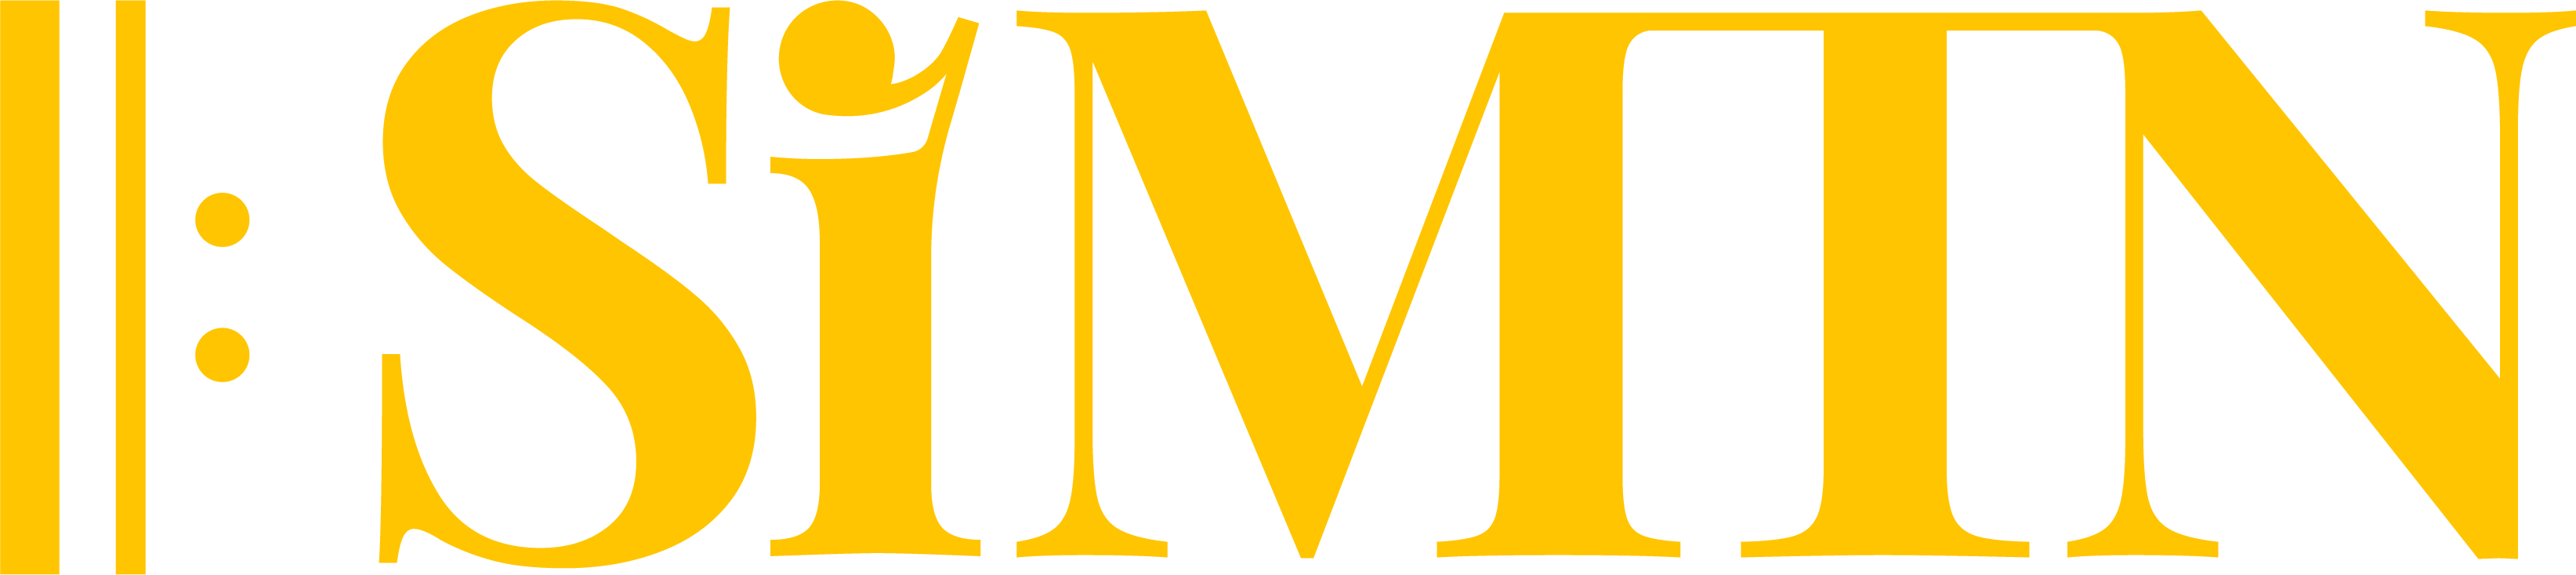 Brand-Mark-MustardHR